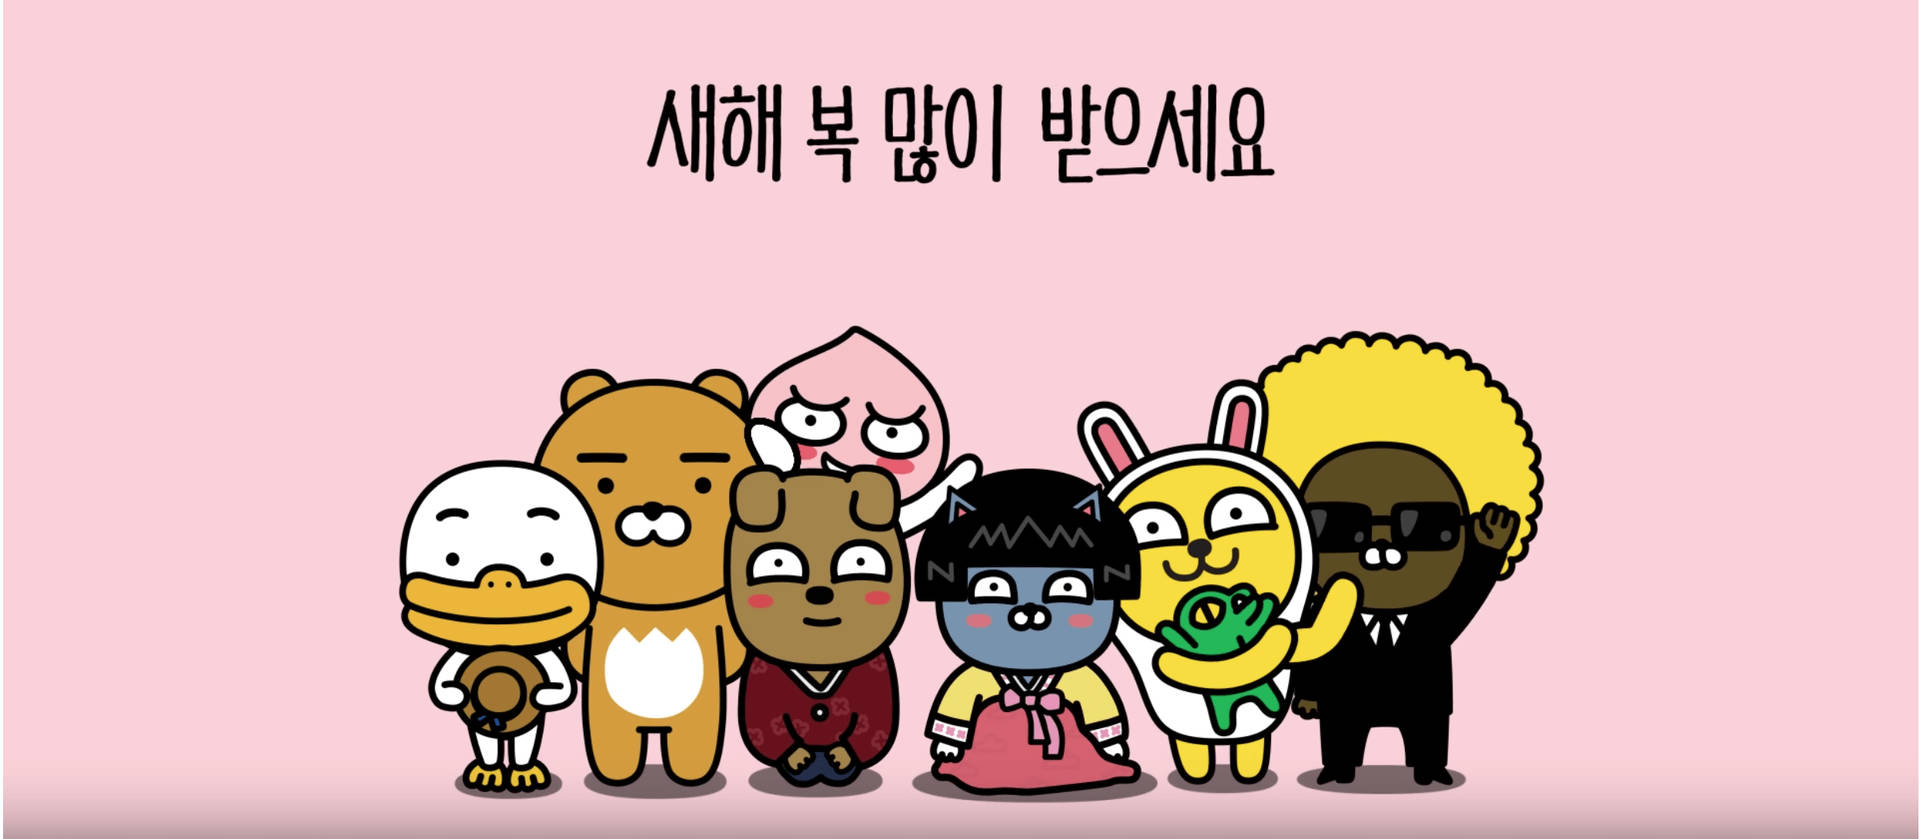 Meet The Cute Kakao Friends Gang!